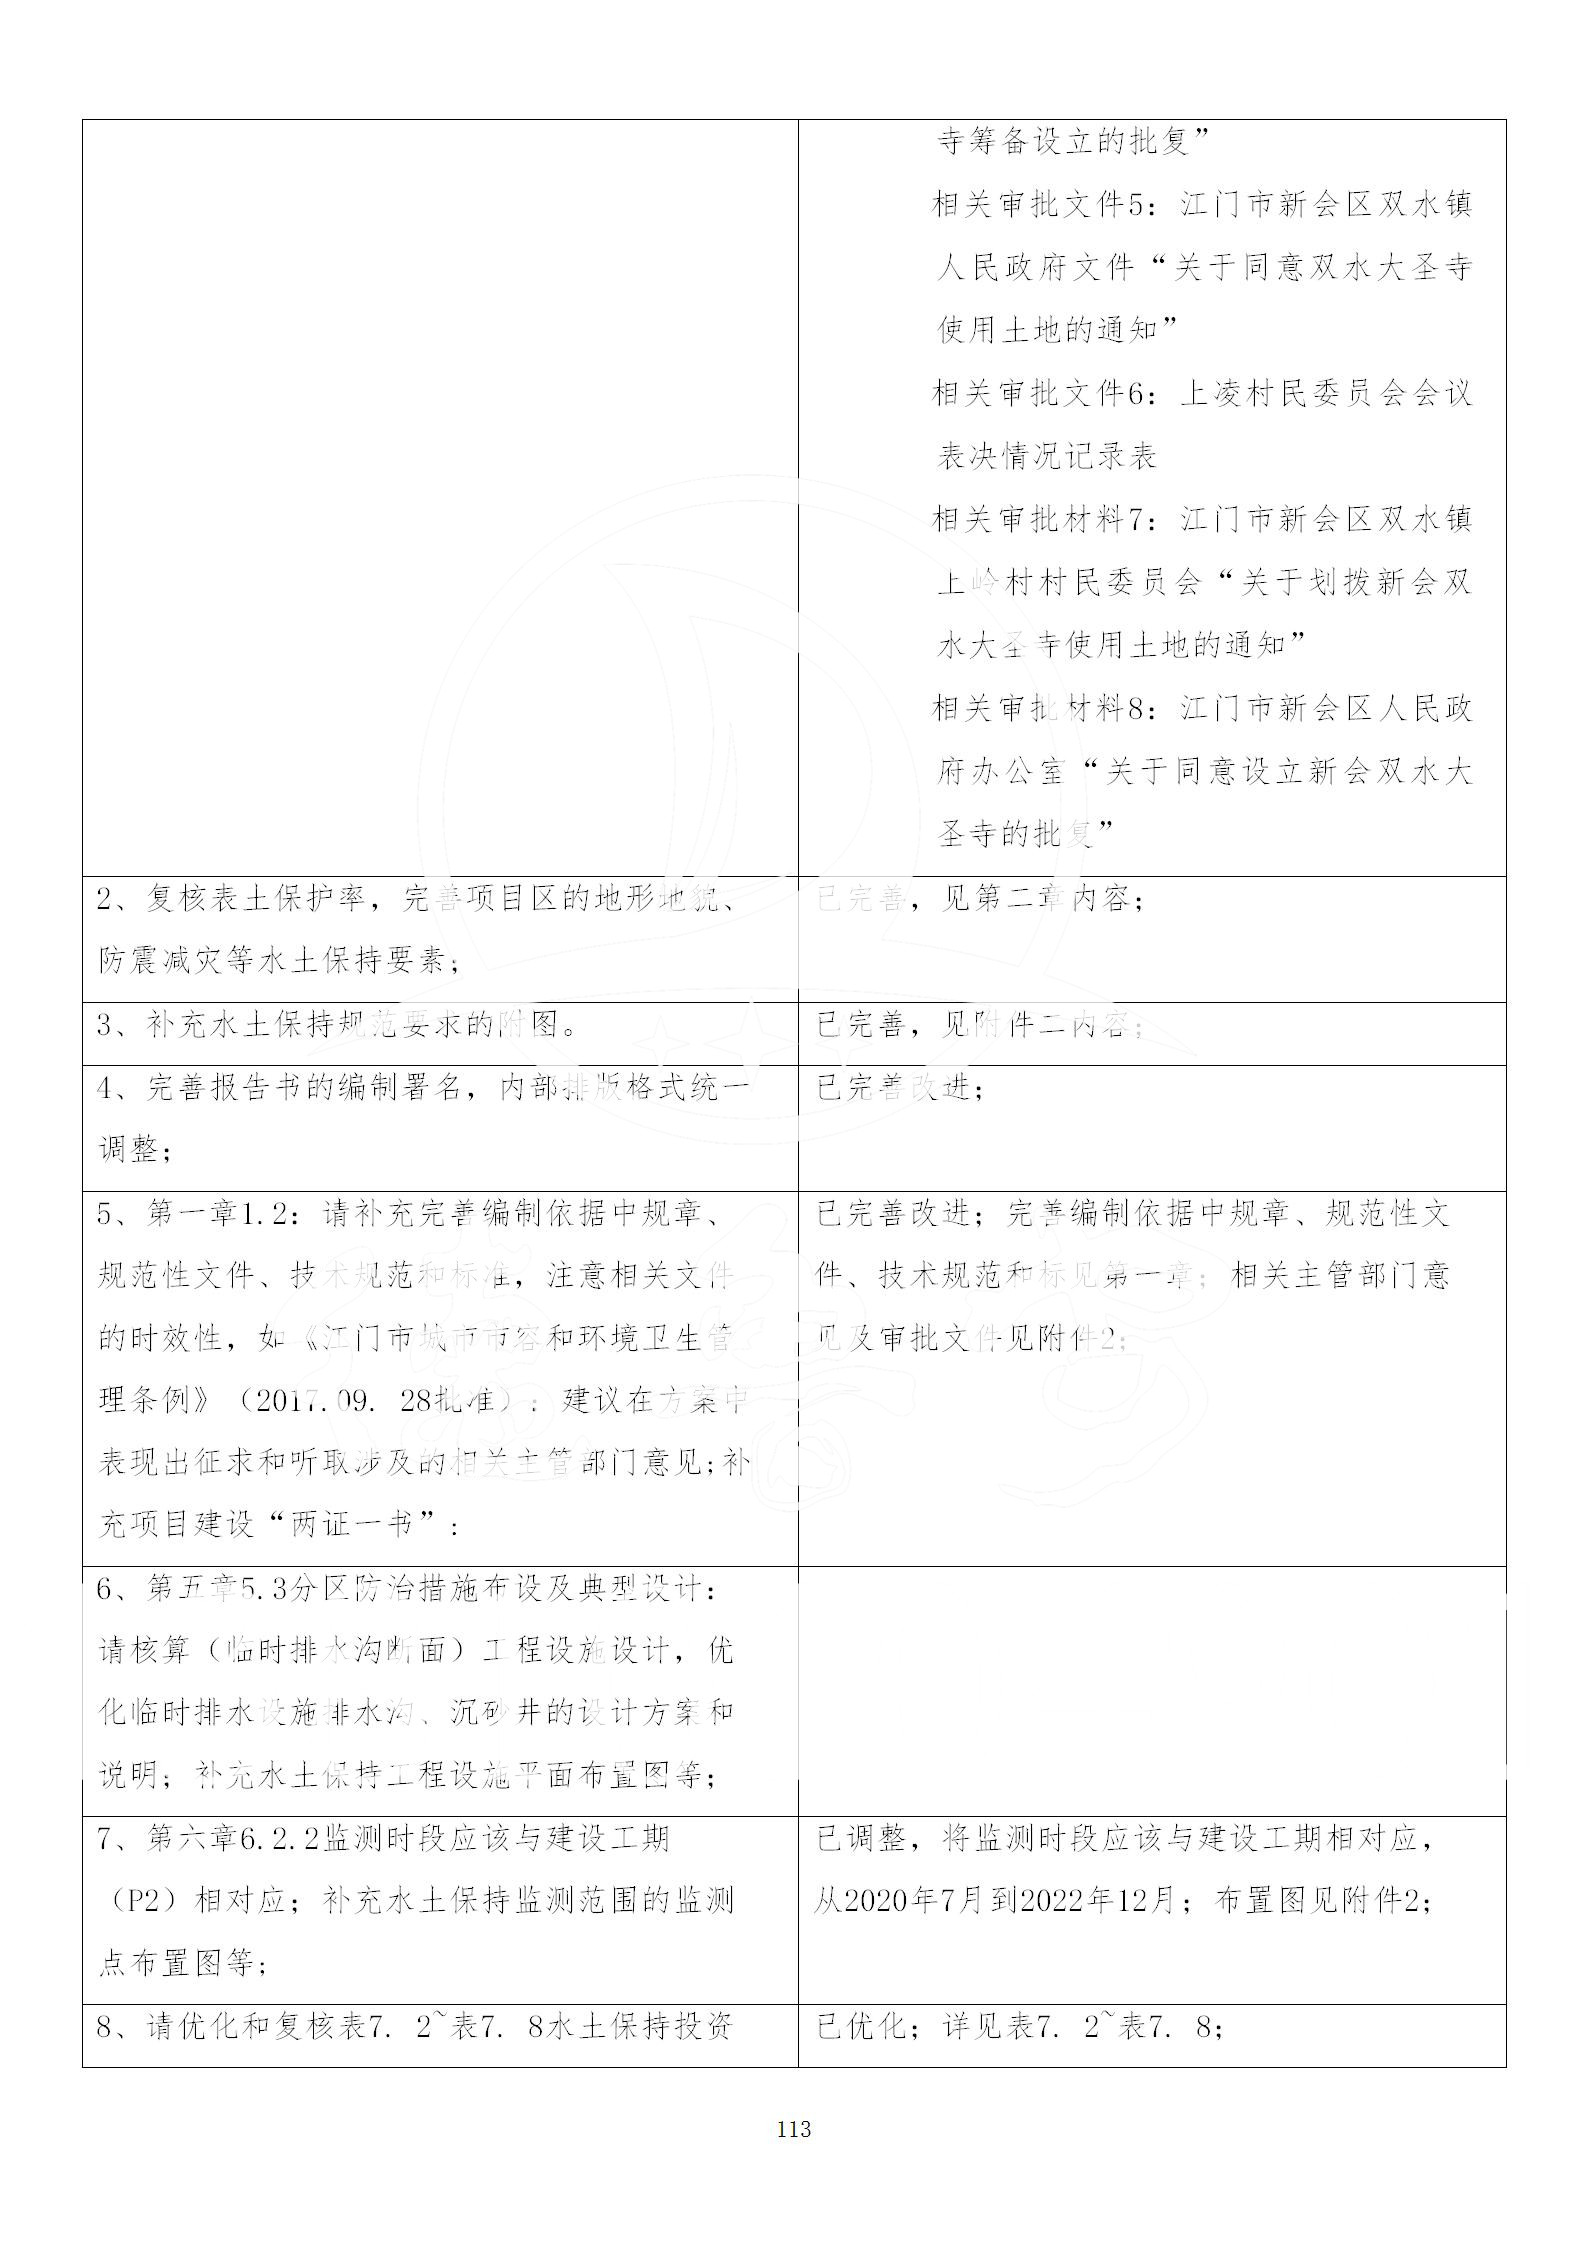 广东省大圣寺水土保持报告  修改稿5_113.jpg